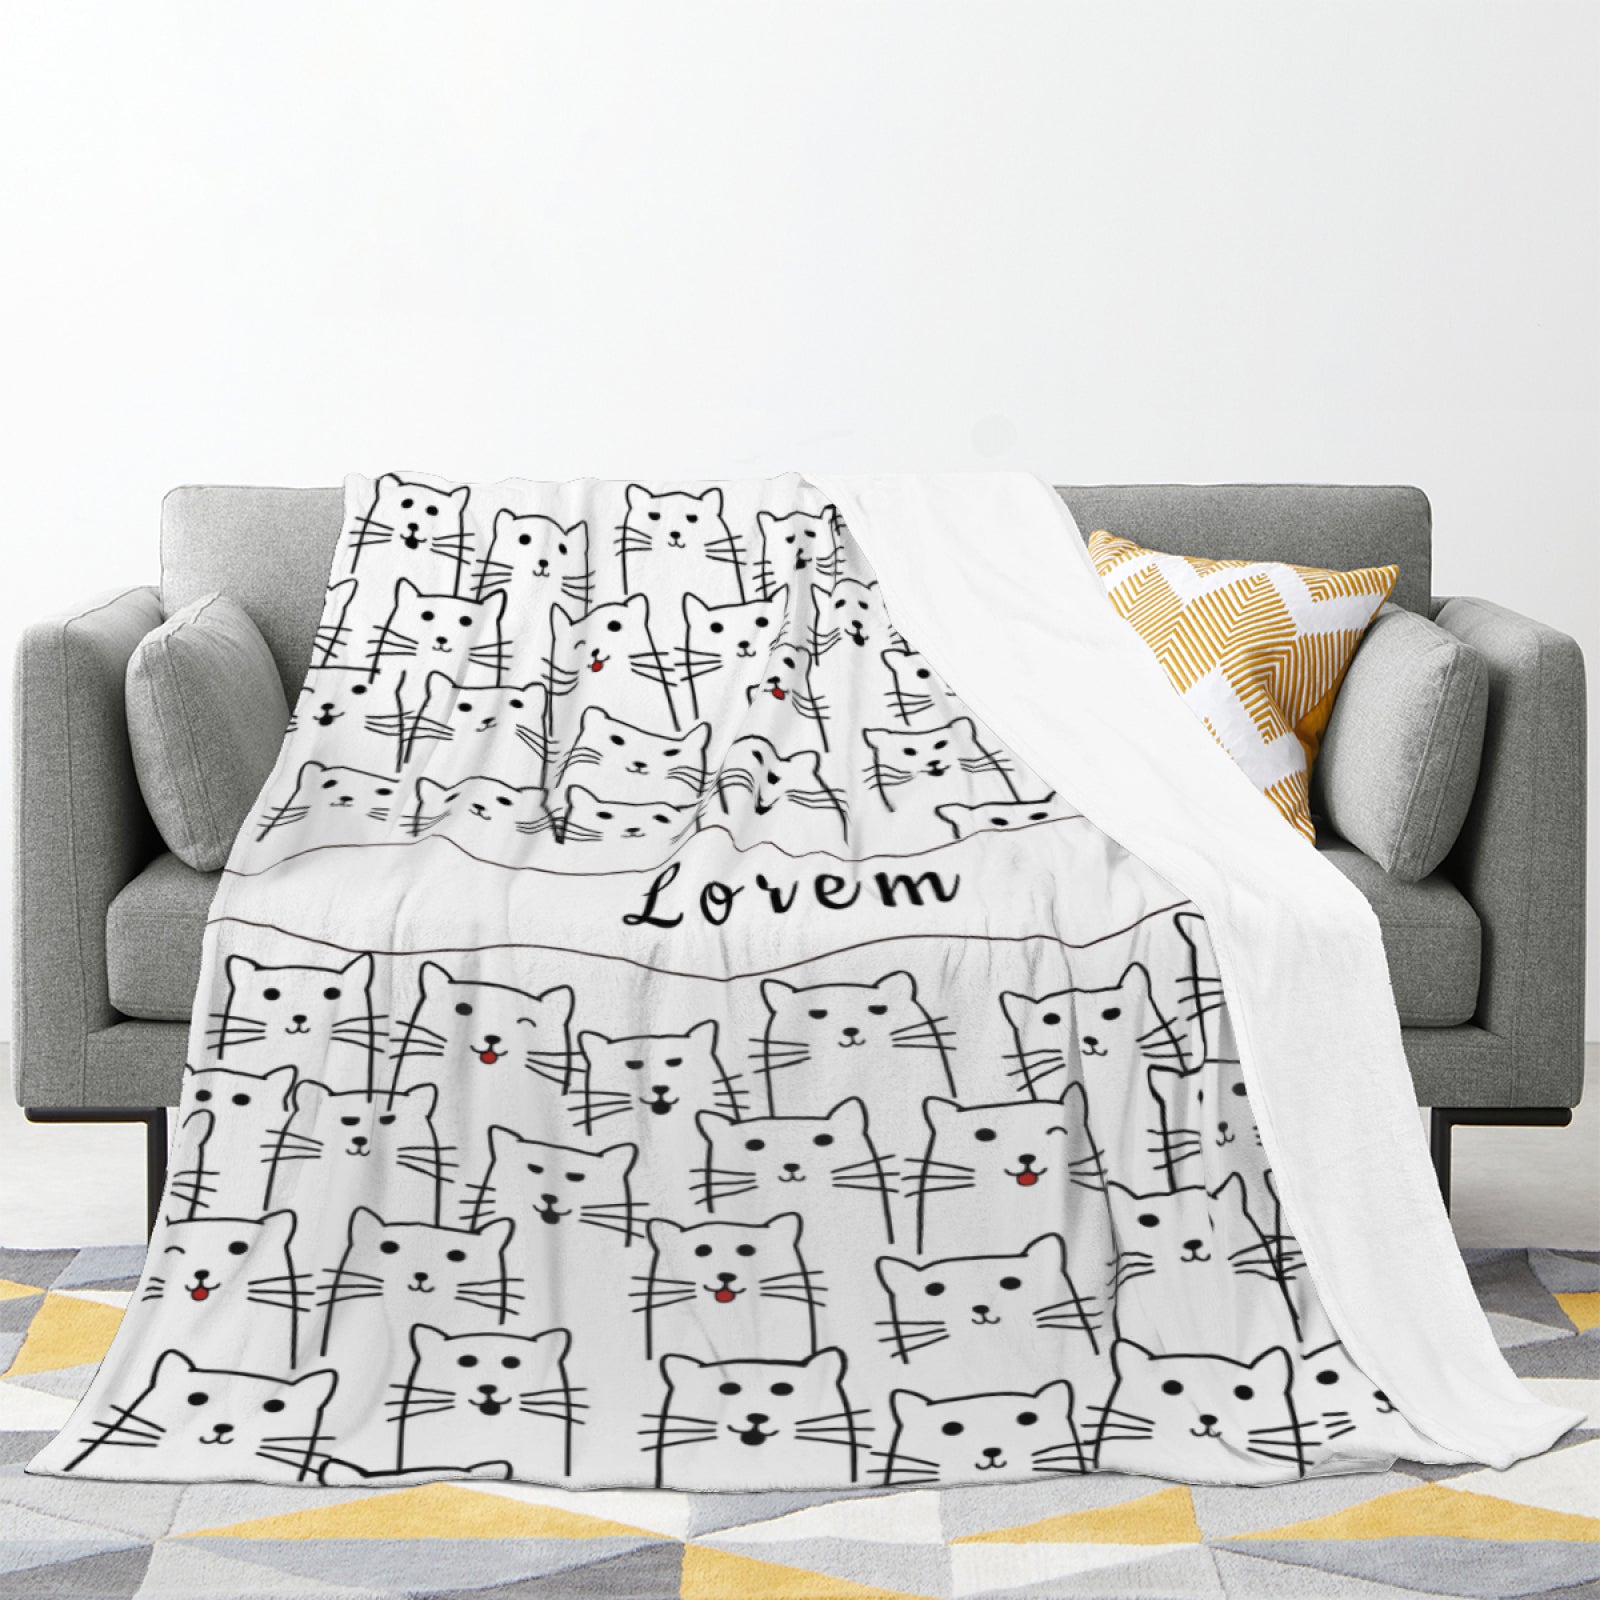 Personalized Kitten Pillow & Blanket-Gifts for Kids Women Men Family